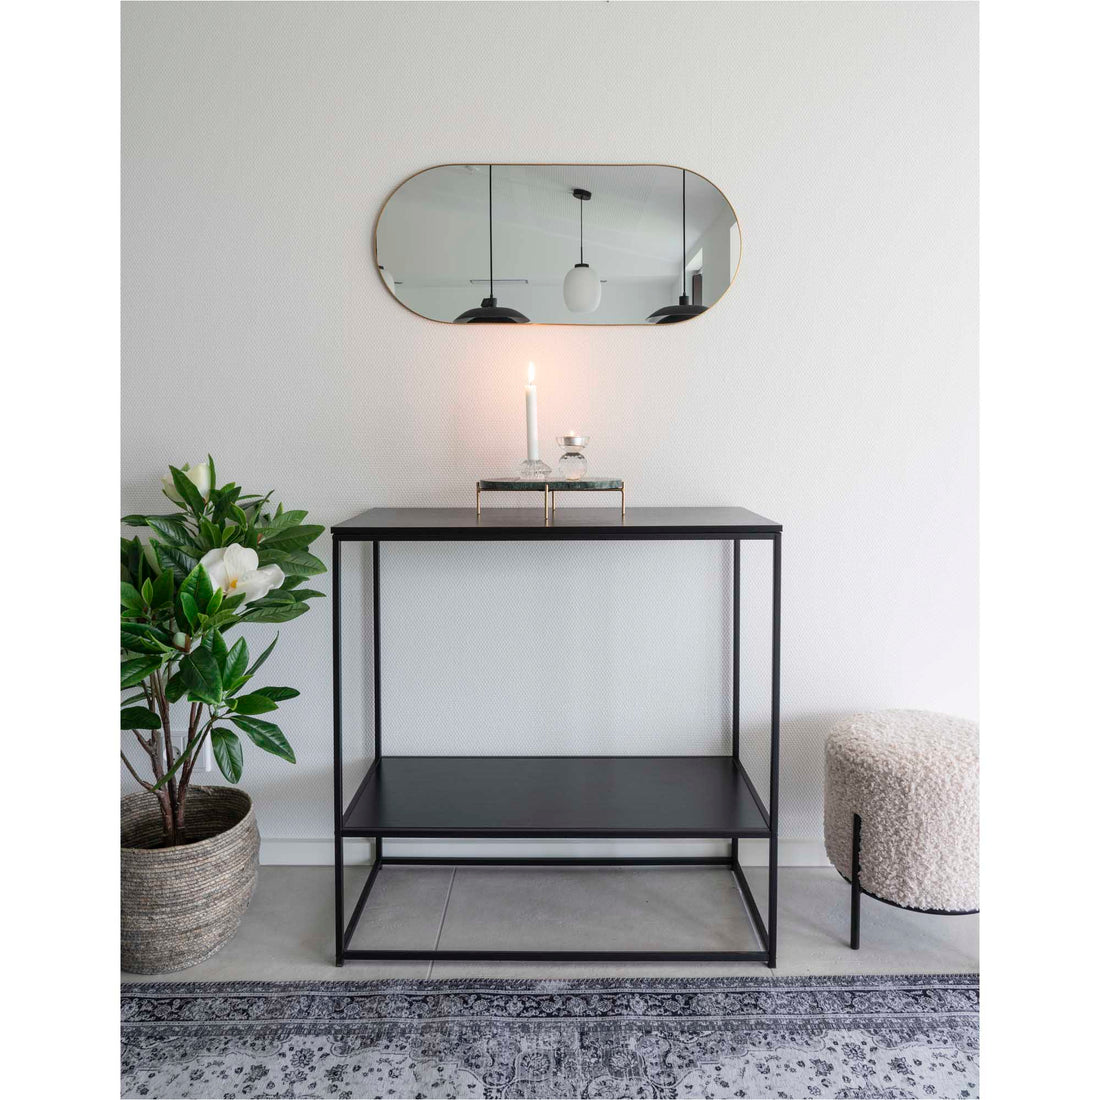 Jersey Mirror Oval - Ovaler Spiegel in Stahl, Messing -Look, 35 x 80 cm - 1 - PCs